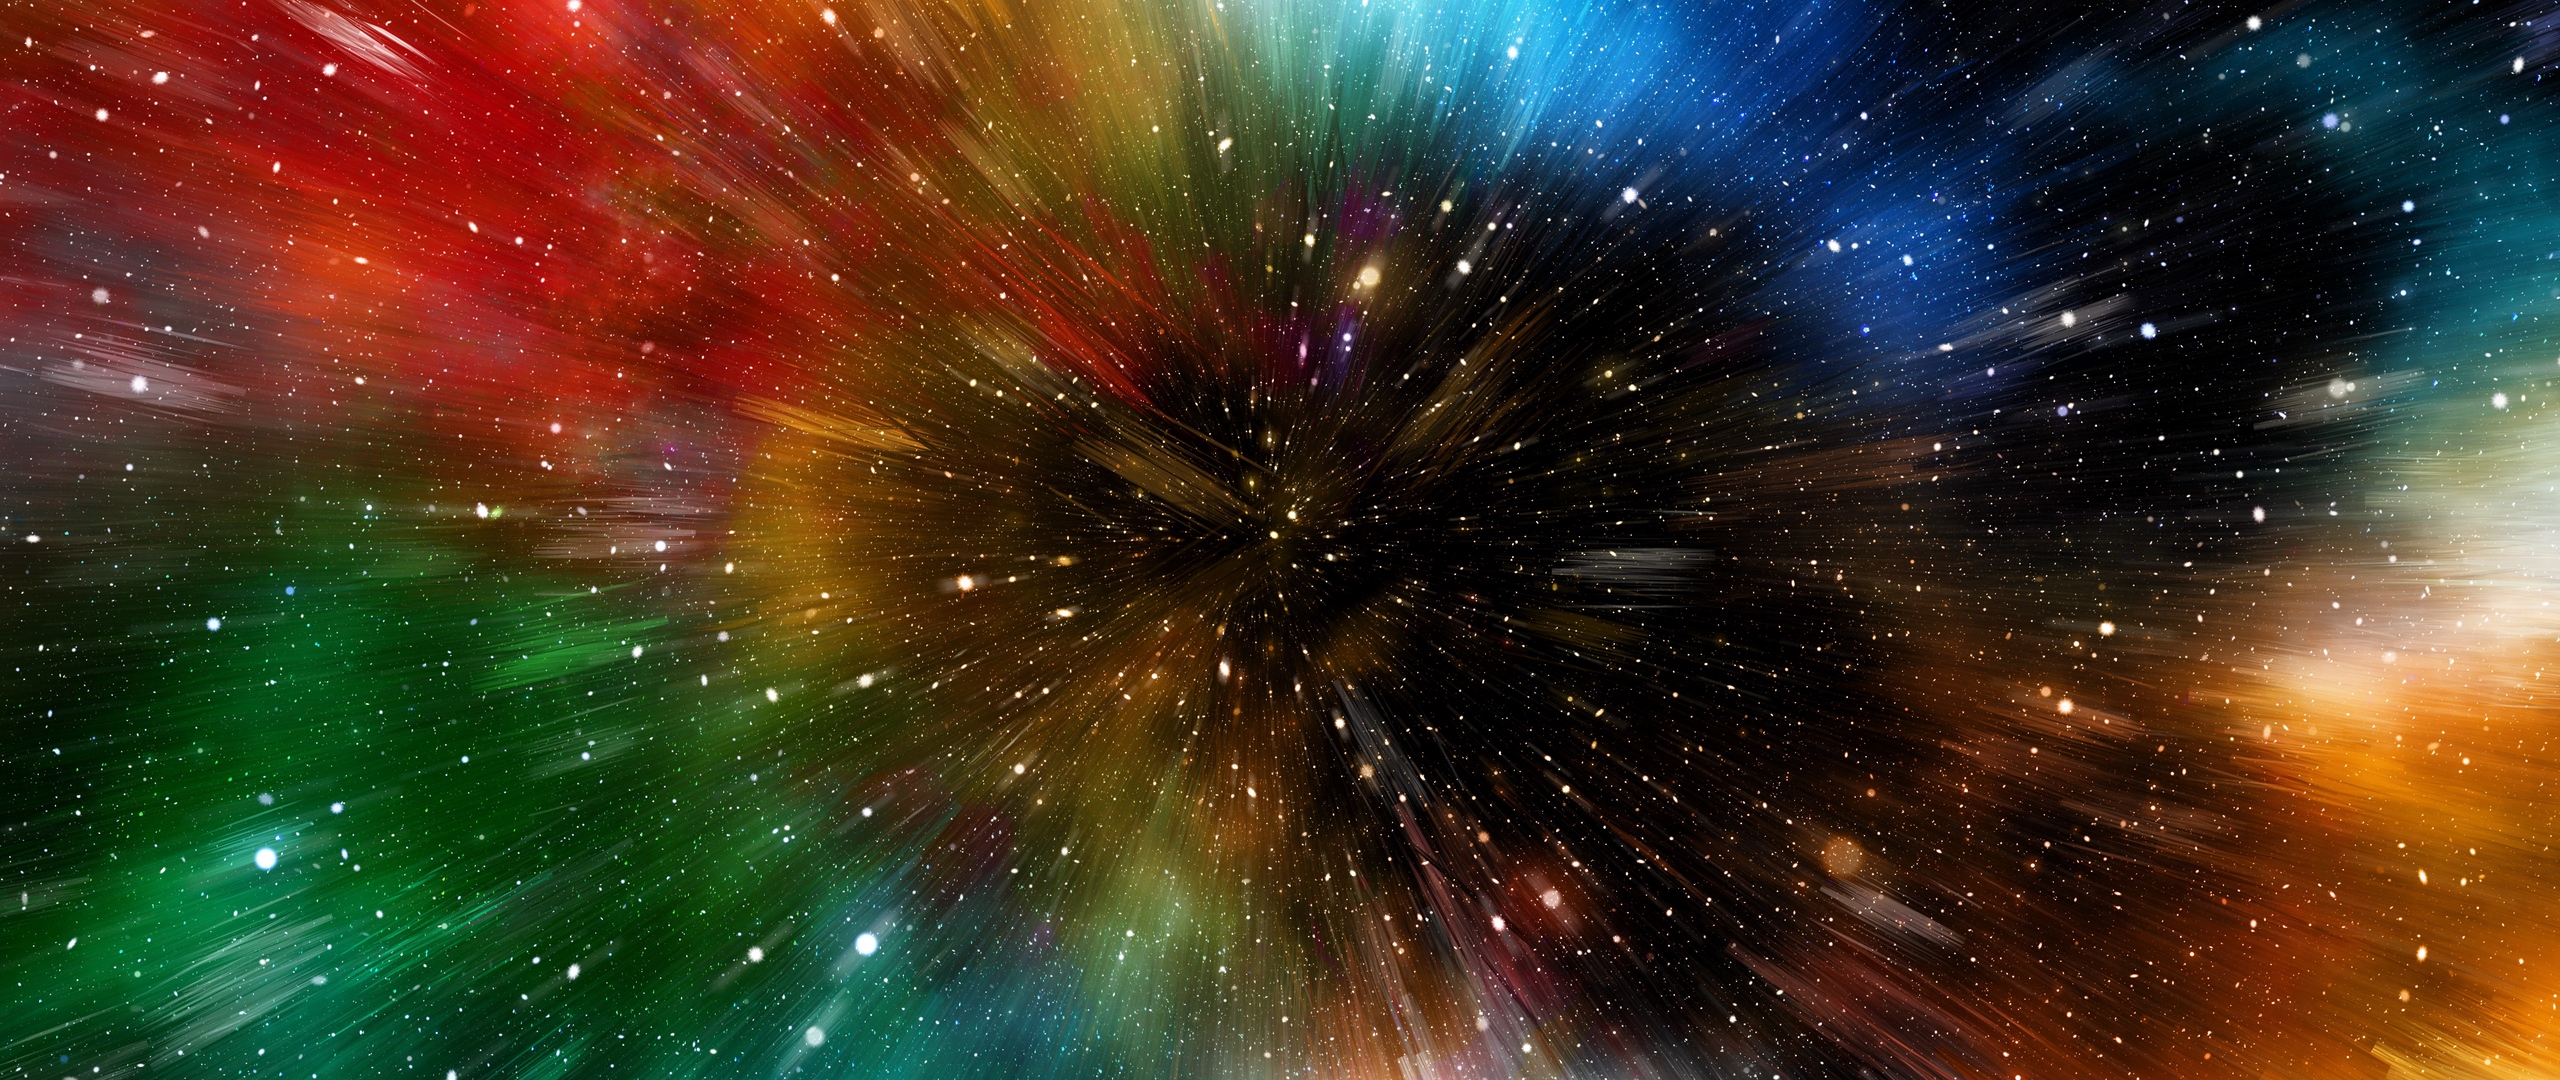 galaxy note 3 wallpaper hd 1080p,natur,himmel,astronomisches objekt,platz,universum